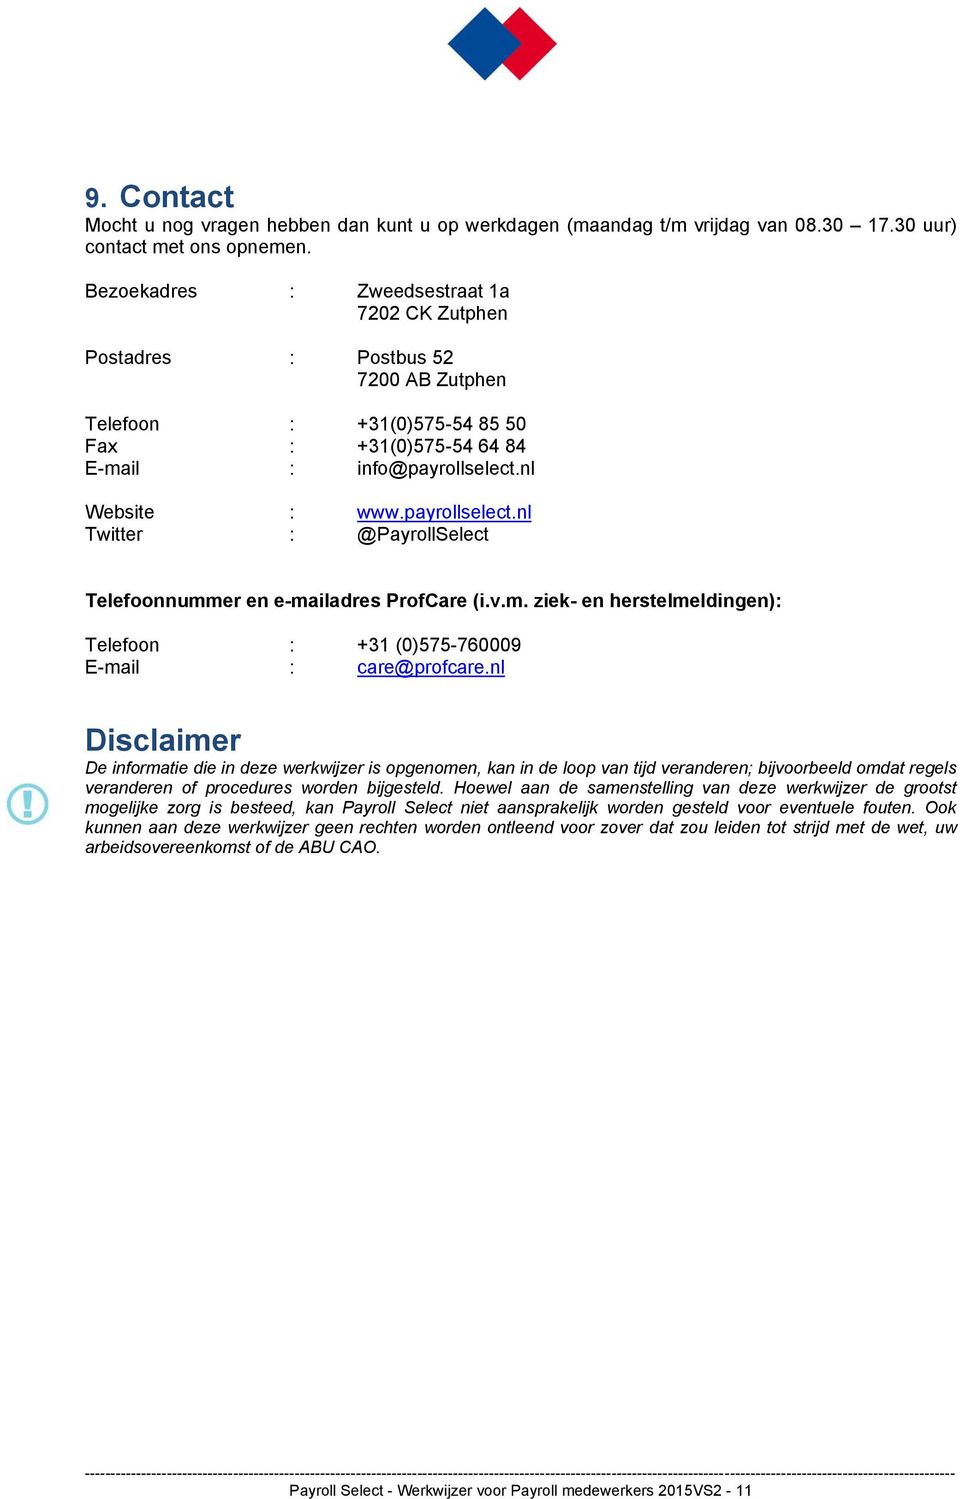 nl Website : www.payrollselect.nl Twitter : @PayrollSelect Telefoonnummer en e-mailadres ProfCare (i.v.m. ziek- en herstelmeldingen): Telefoon : +31 (0)575-760009 E-mail : care@profcare.